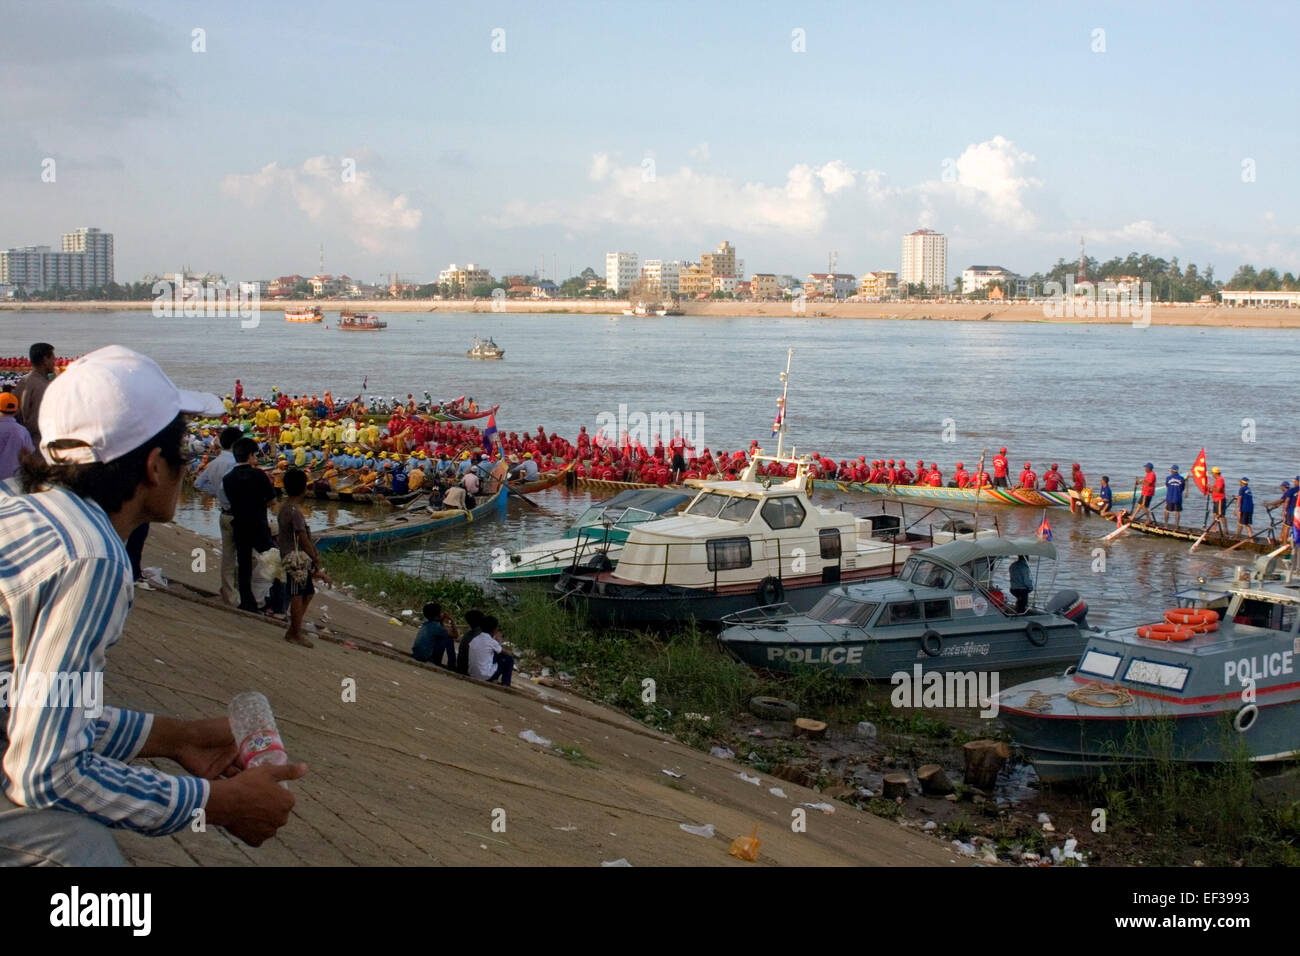 Les hommes sont assis dans des bateaux de course lors de l'Assemblée Phnom Penh Fête de l'eau sur le Mékong à Phnom Penh, Cambodge. Banque D'Images